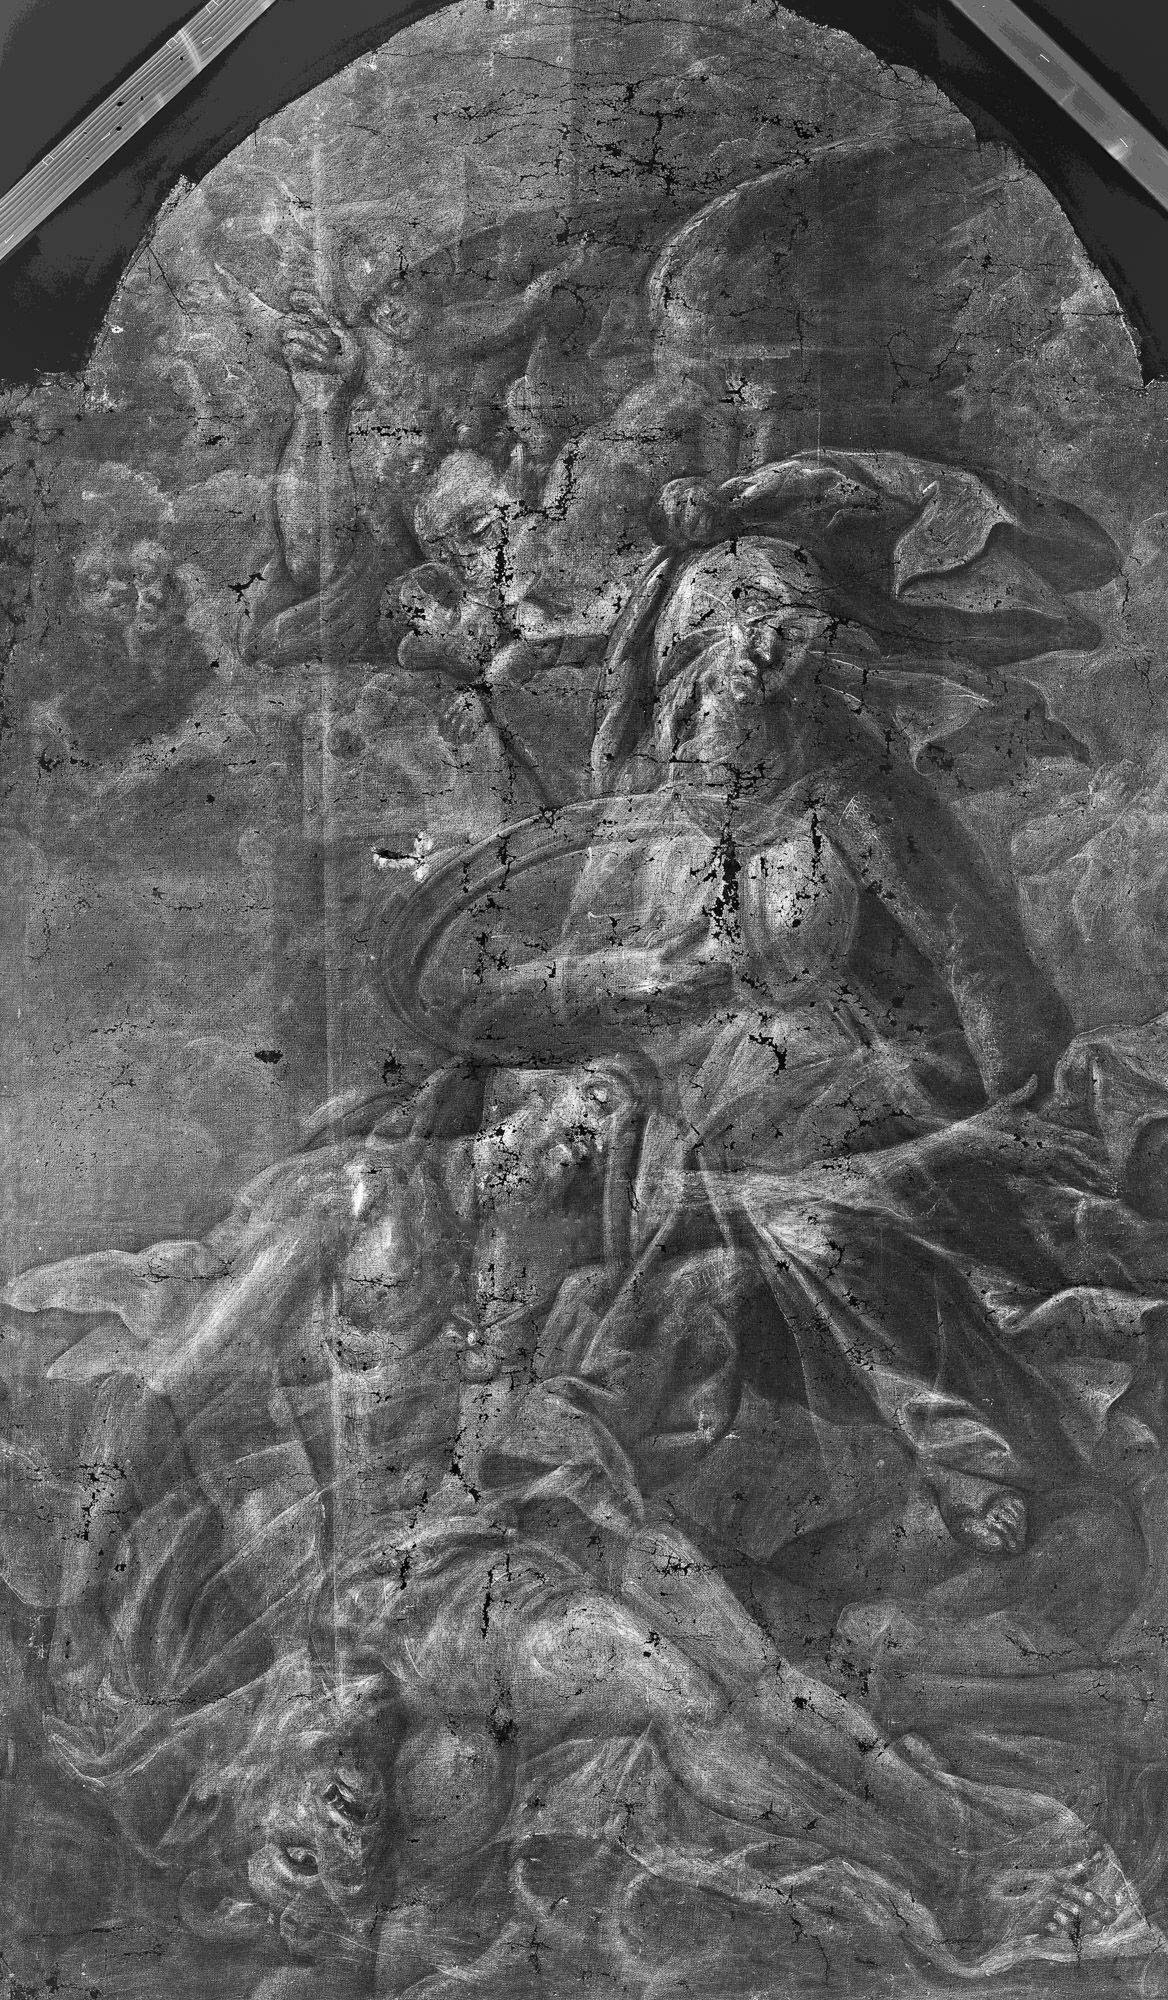 Szent Mihályt ábrázoló festmény került elő a Nagy-Eged-hegyi káponában